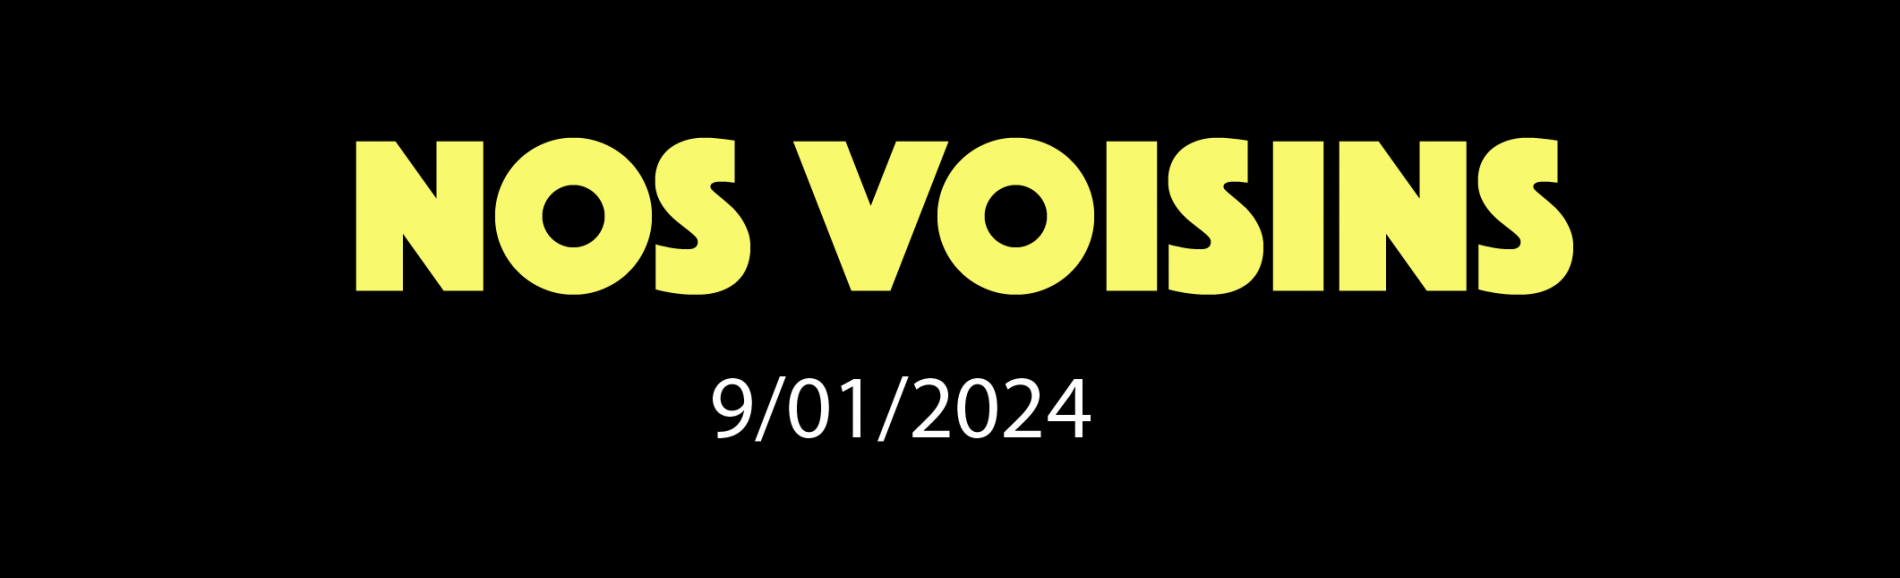 NOS VOISINS - 09/01/2024